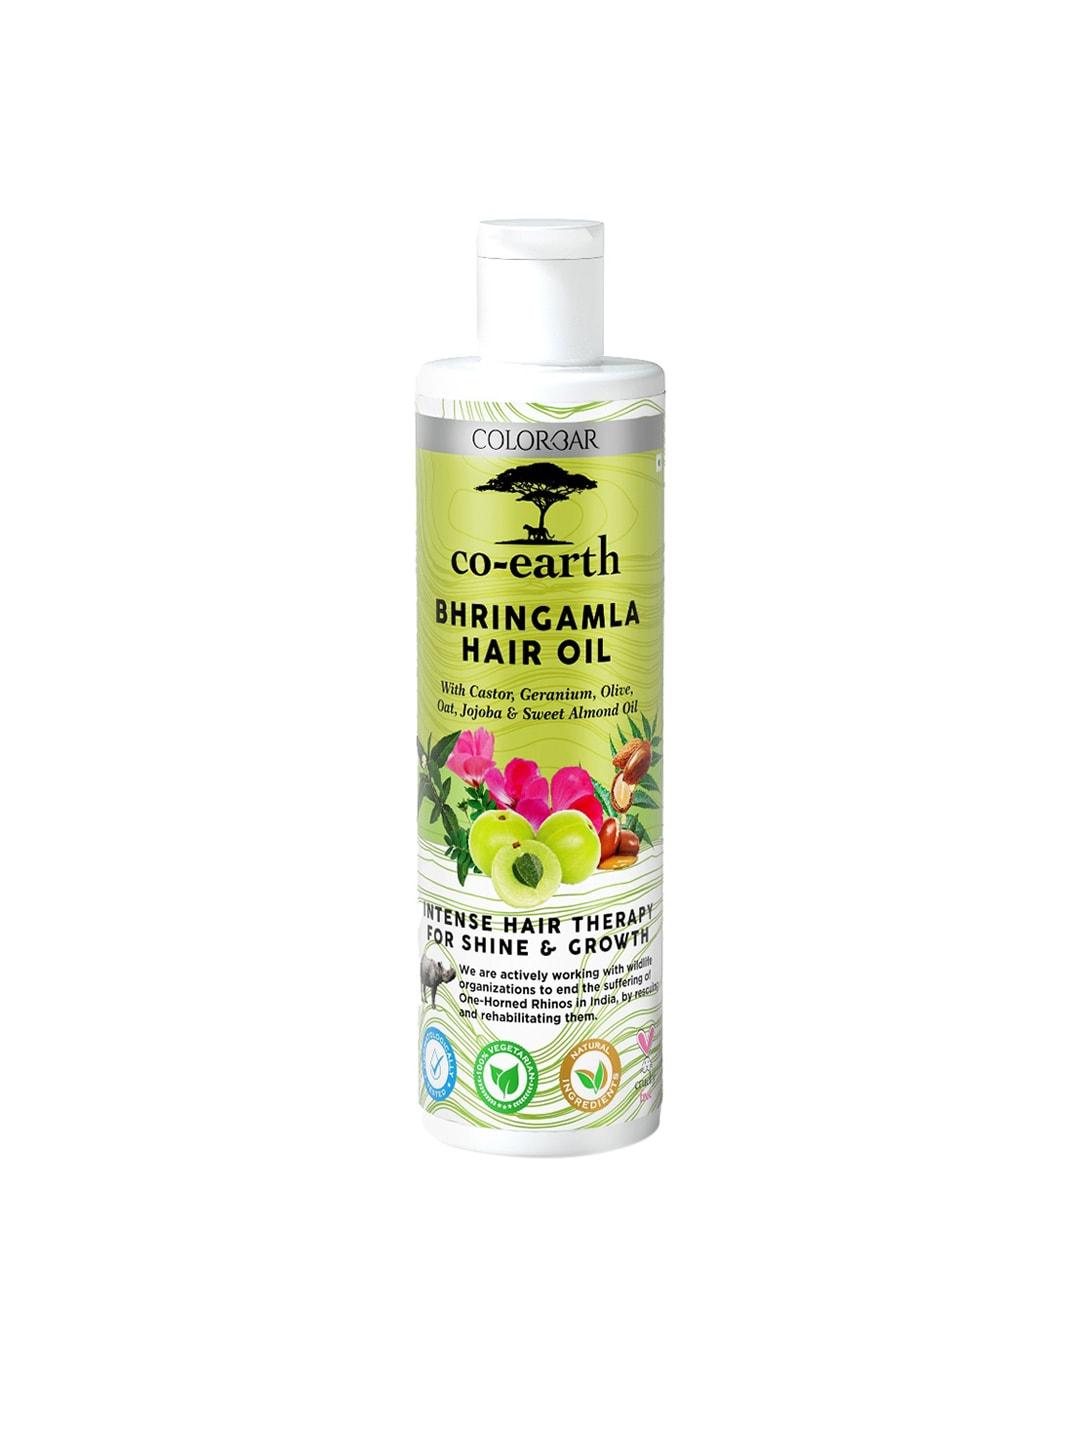 colorbar co-earth bhringamla hair oil with castor & oilve oil for shine & growth - 250ml